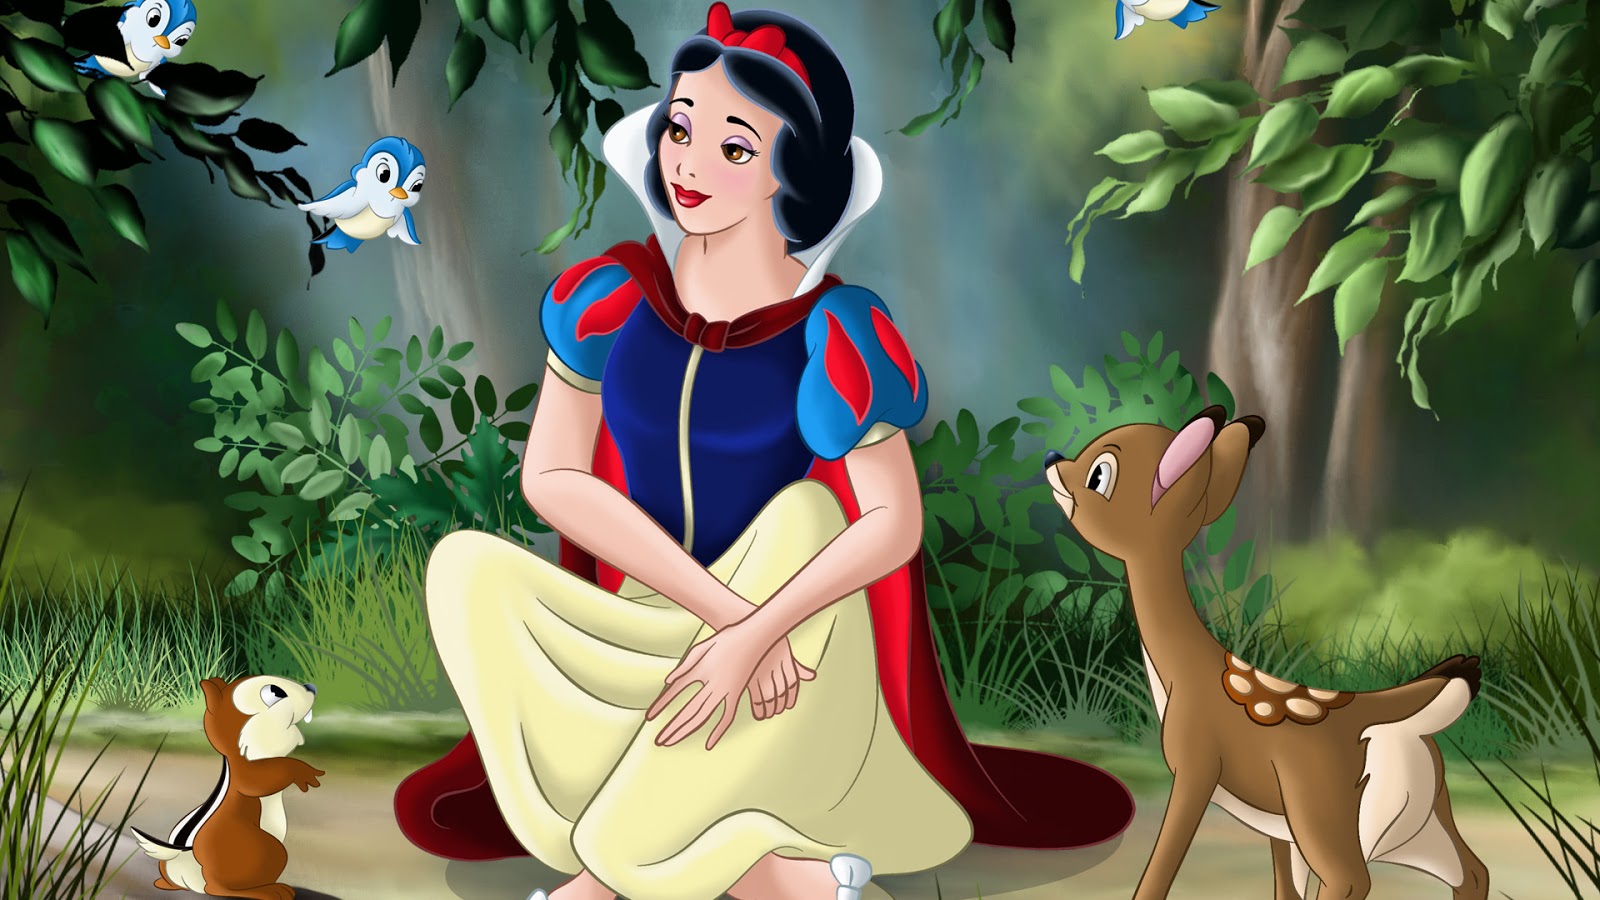 Walt Disney Wallpapers - Princess Snow White - Disney Princess Wallpaper  (5775943) - Fanpop